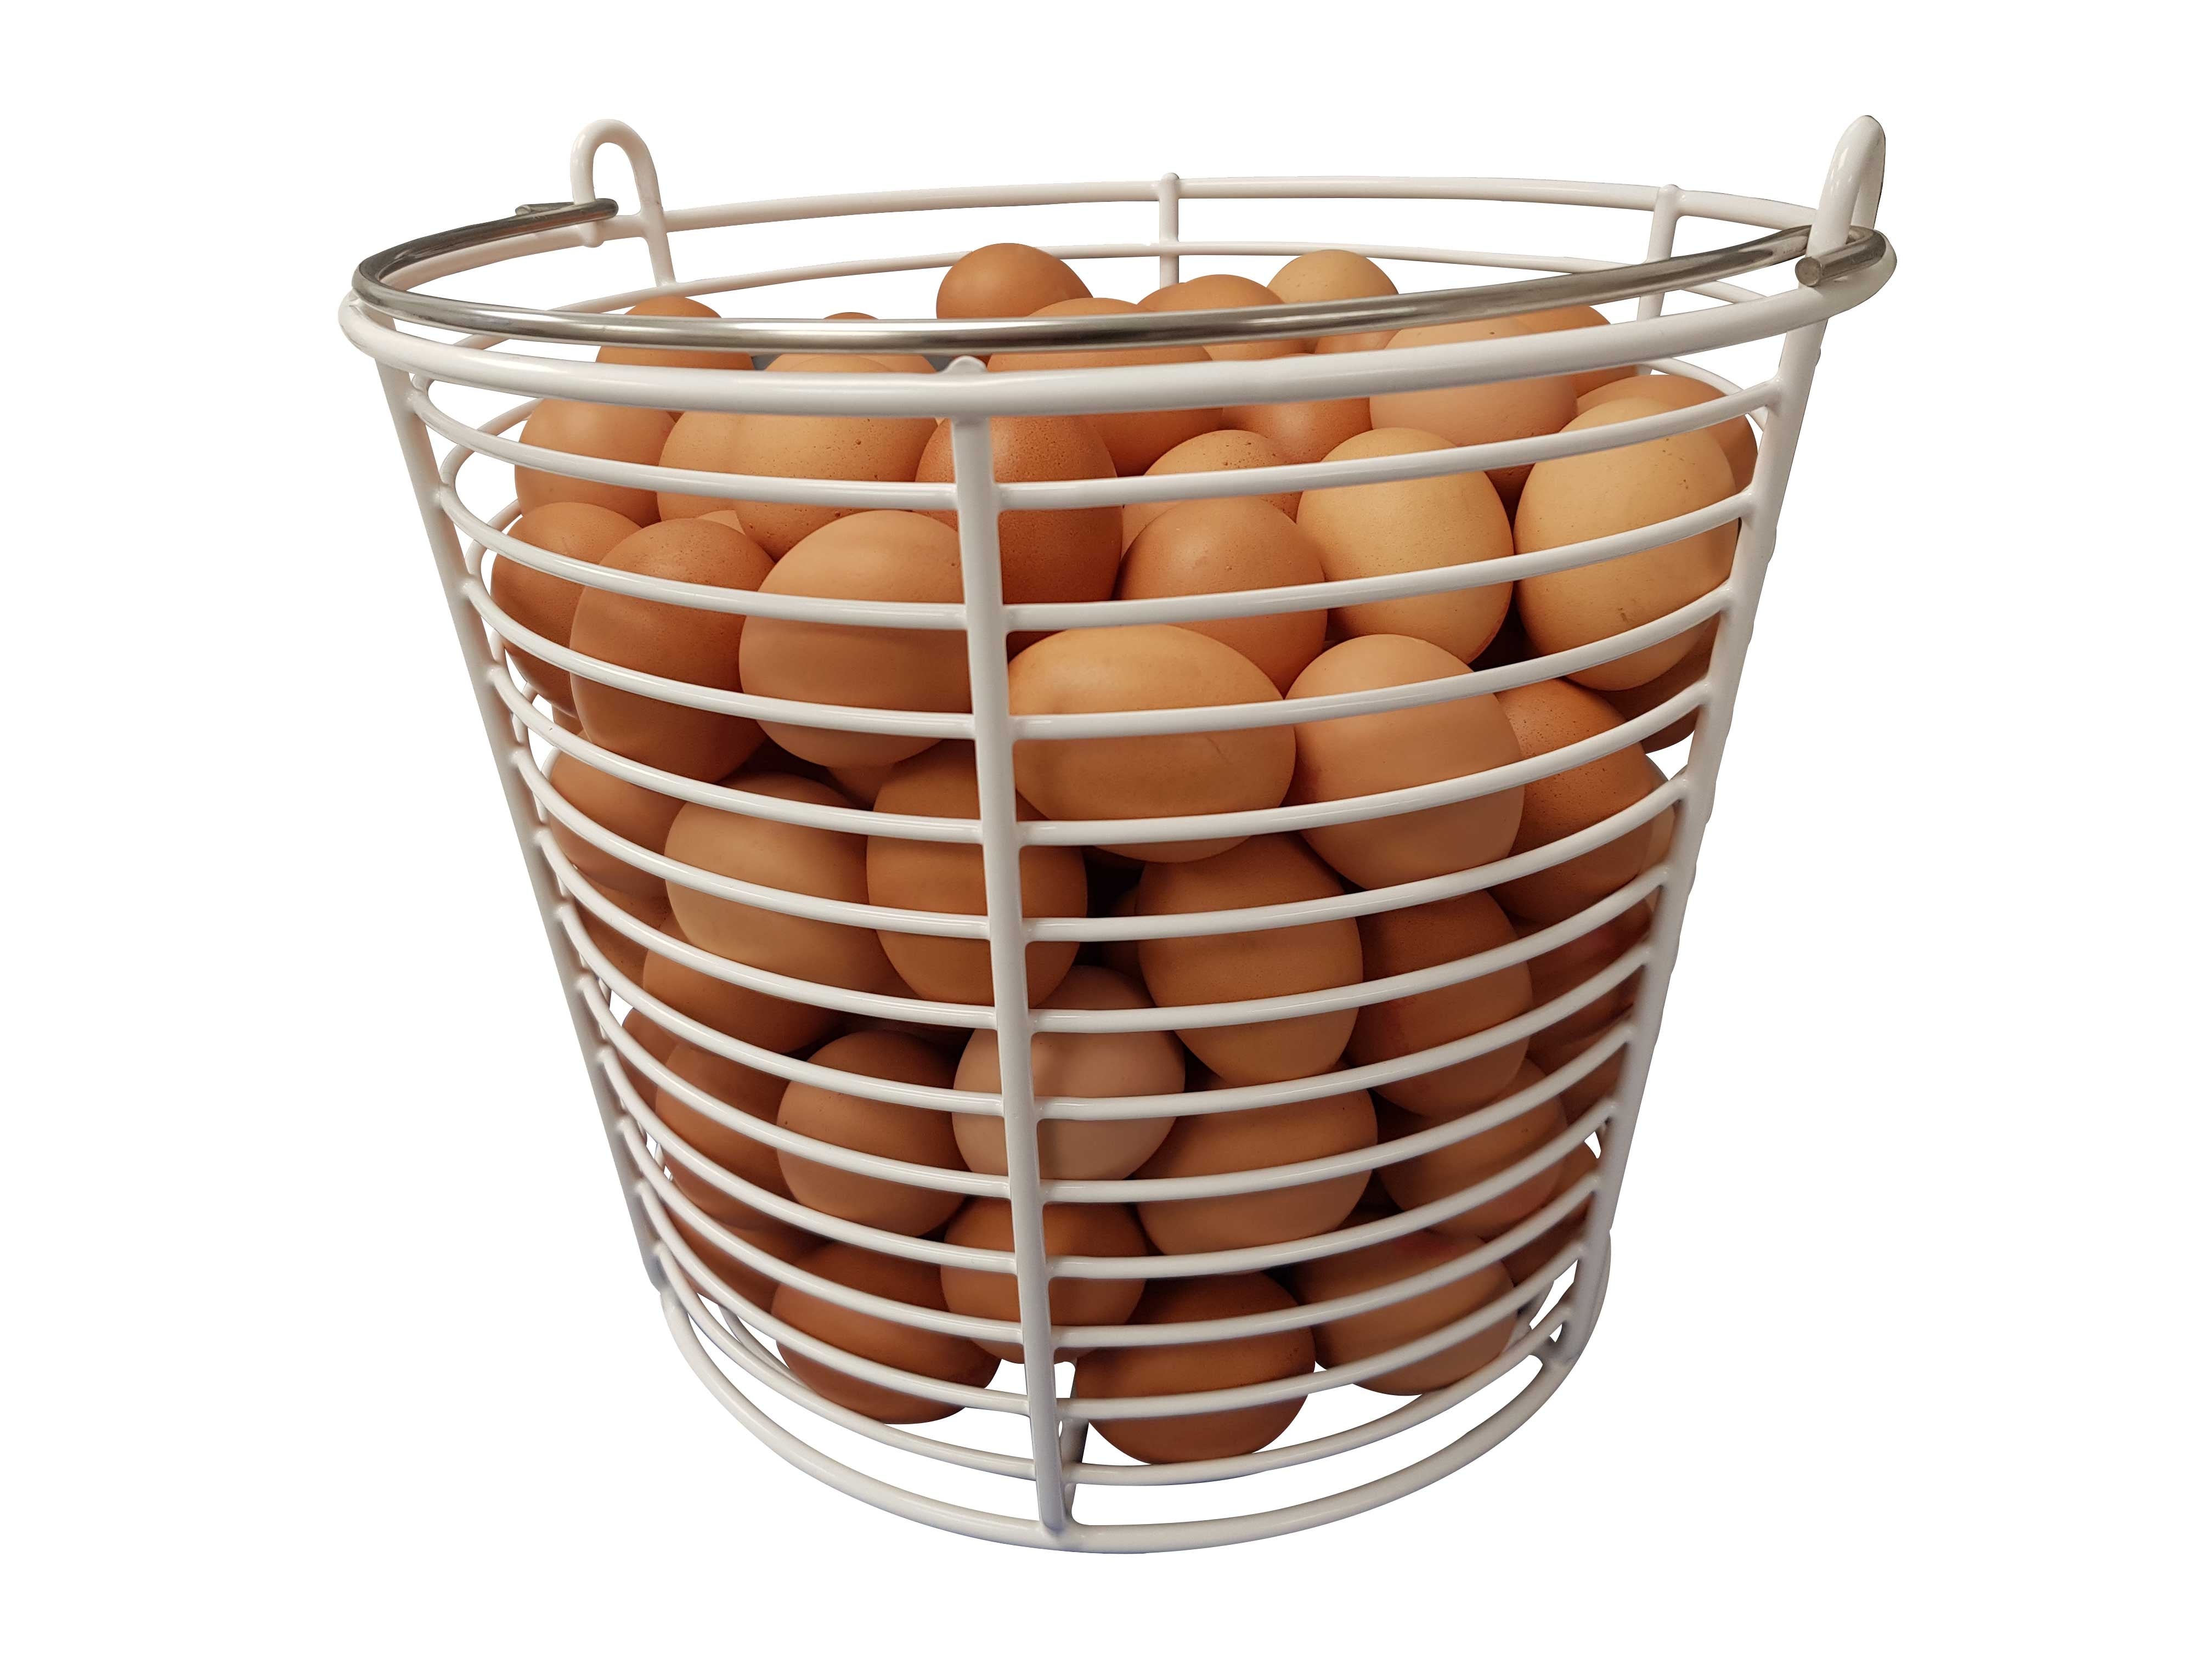 Rotomaid Egg Washer